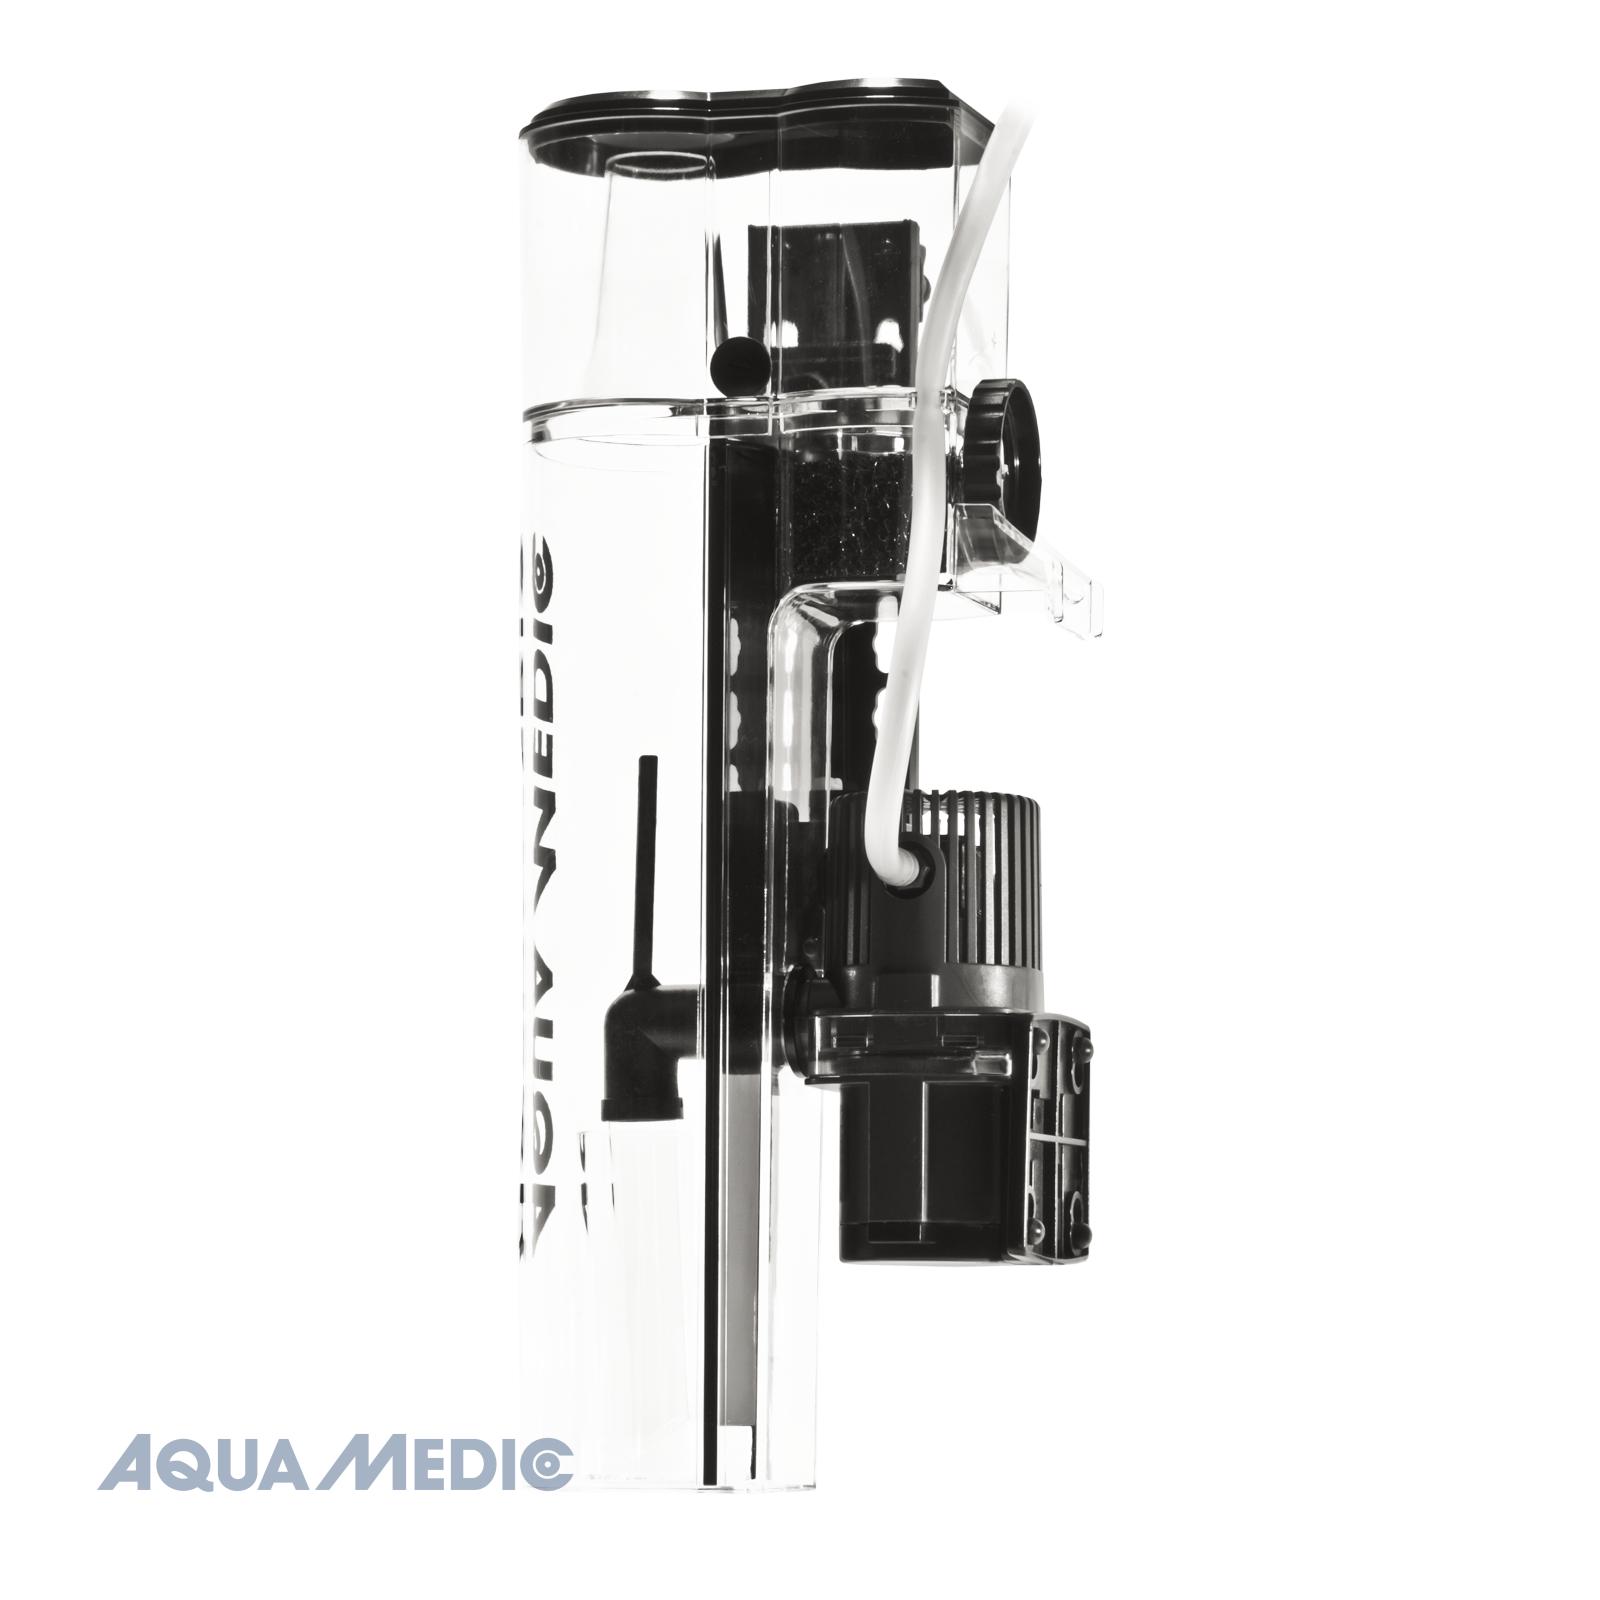 Aqua Medic Kauderni CF white